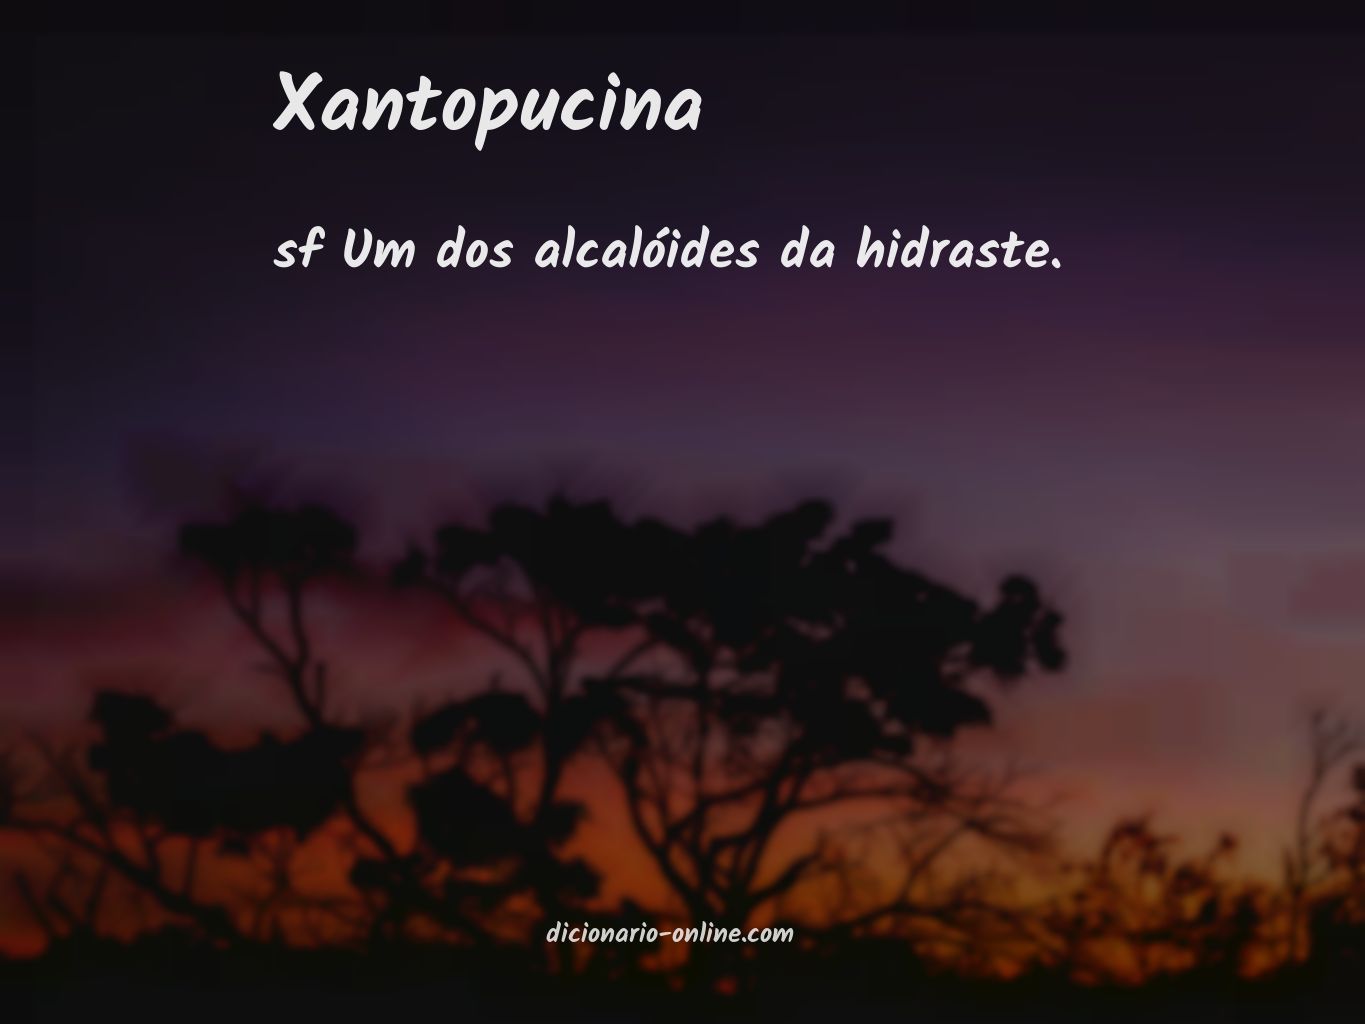 Significado de xantopucina